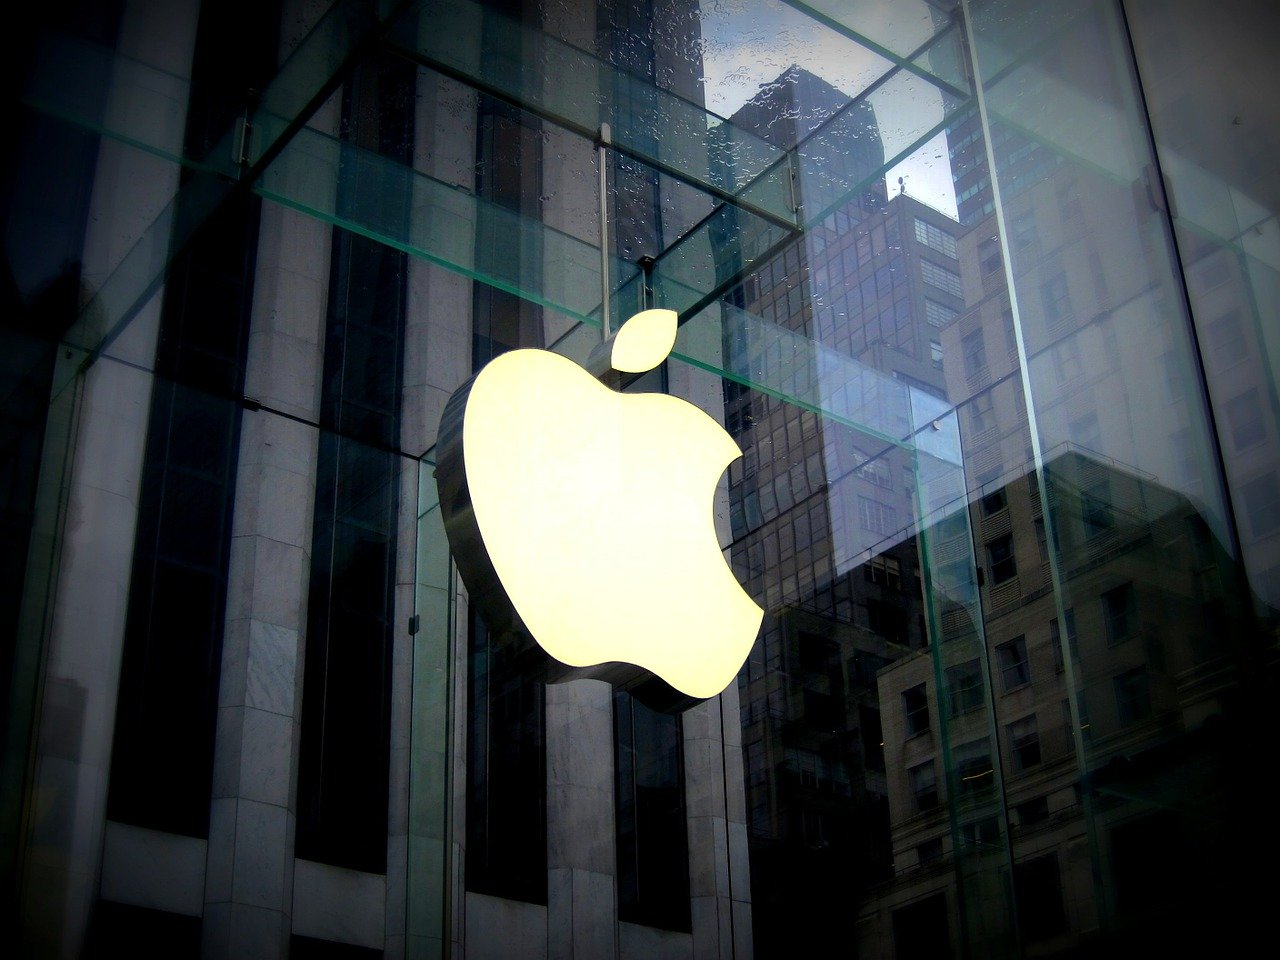  Apple : L’iPhone 12 pourrait ne pas tenir toutes ses promesses en matière de 5G